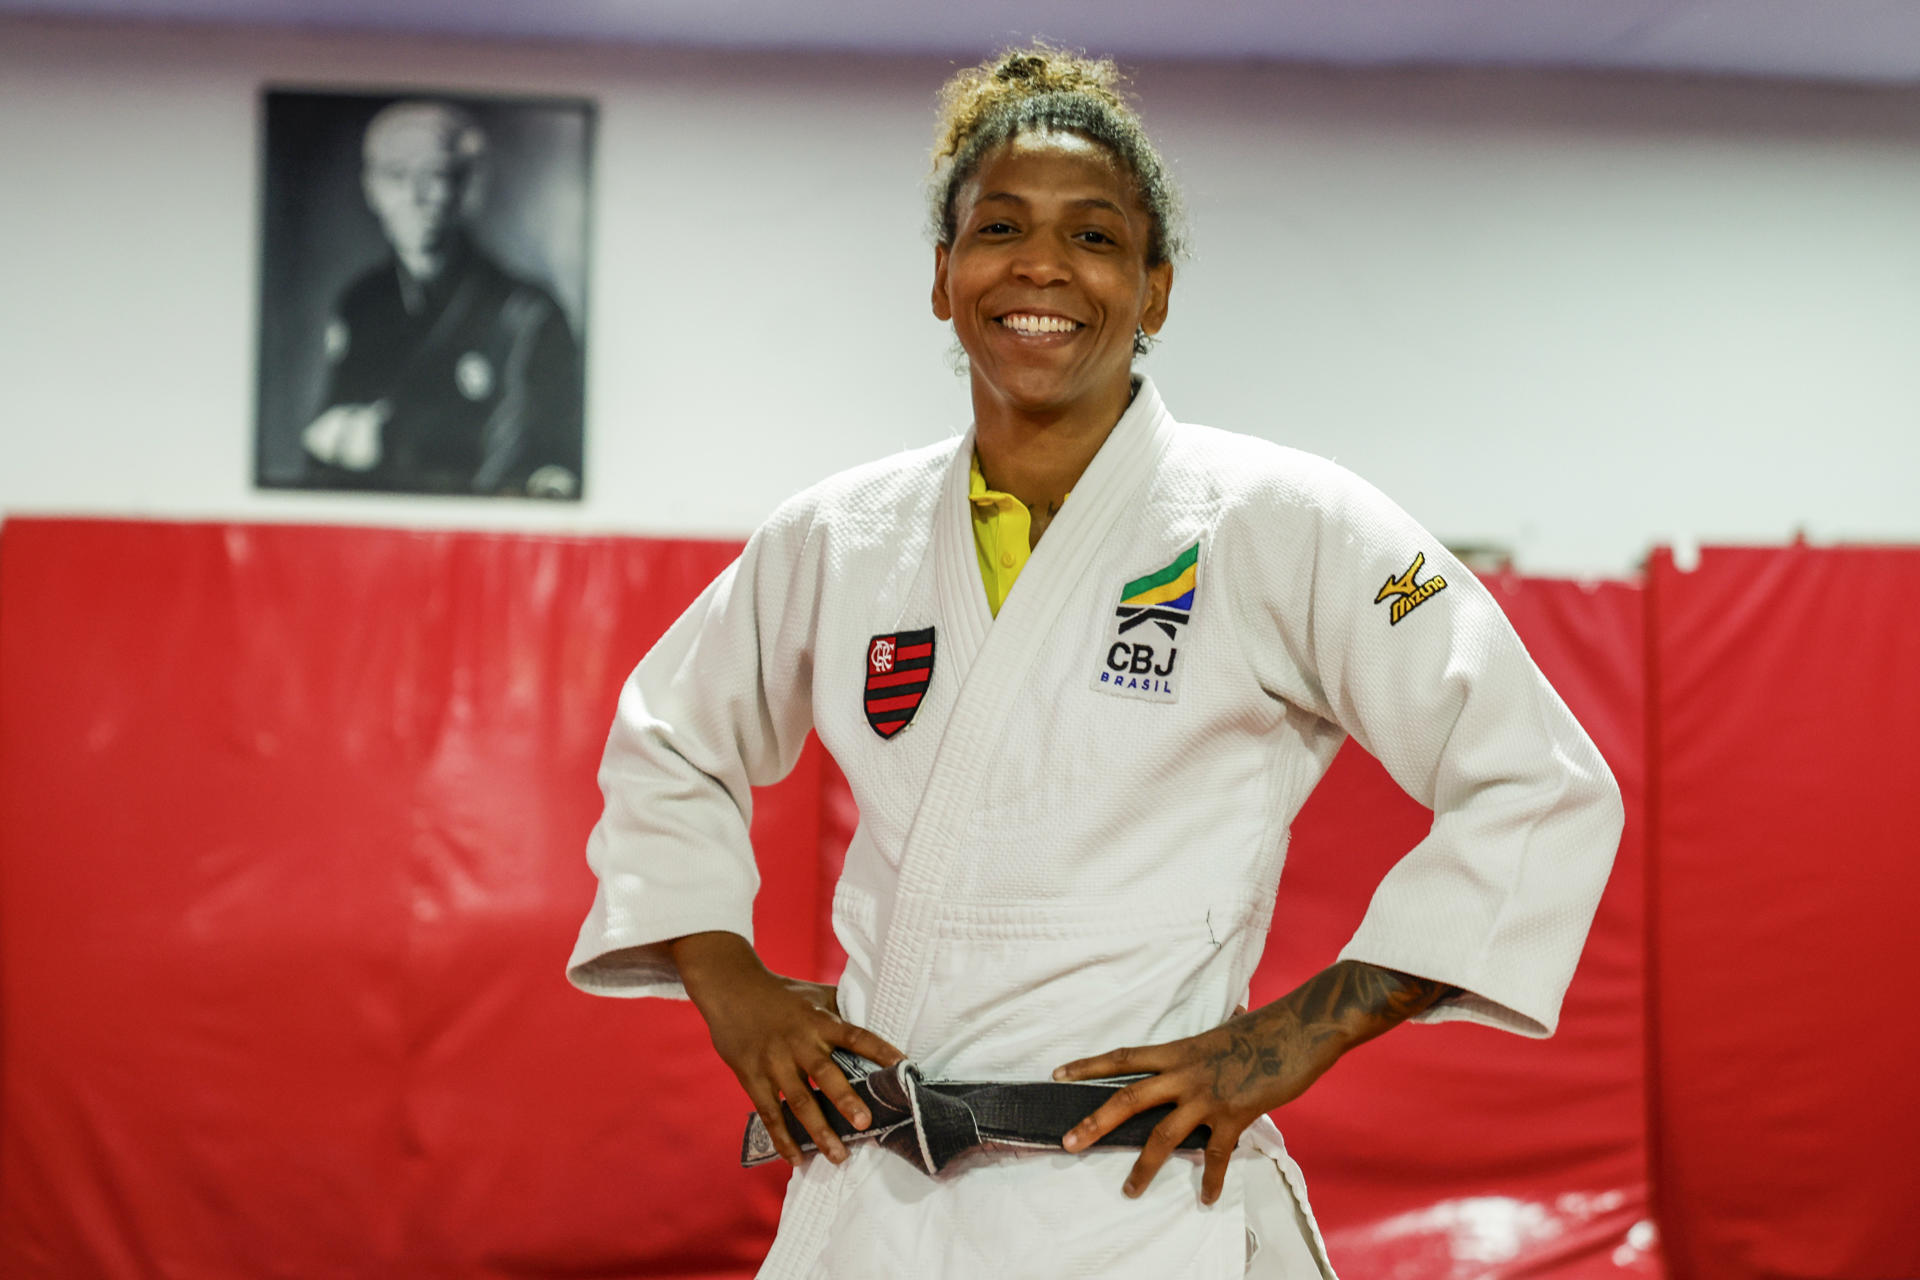 La judoca brasileña Rafaela Silva fue registrada el pasado 15 de julio al posar, durante una entrevista con EFE, en Río de Janeiro (Brasil). EFE/Antonio Lacerda